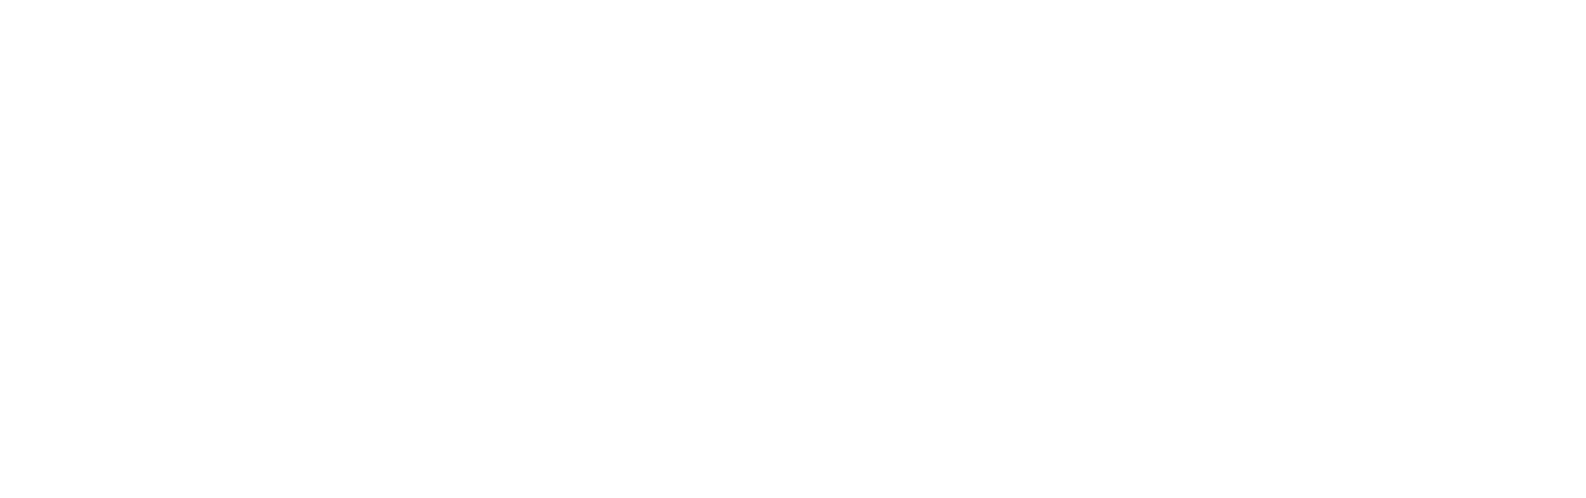 Remgro Limited logo large for dark backgrounds (transparent PNG)